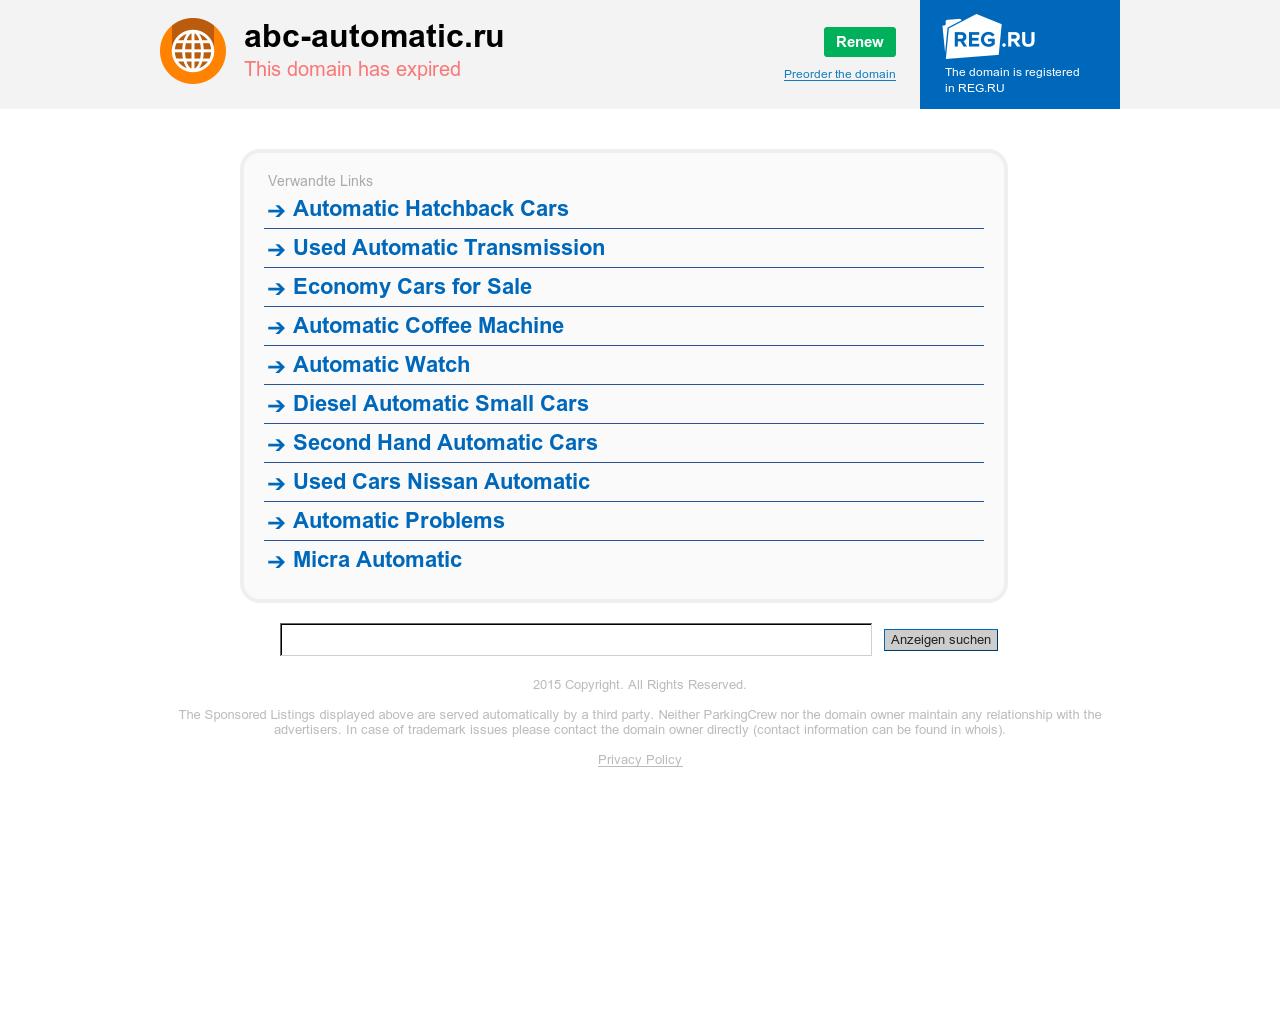 Изображение сайта abc-automatic.ru в разрешении 1280x1024